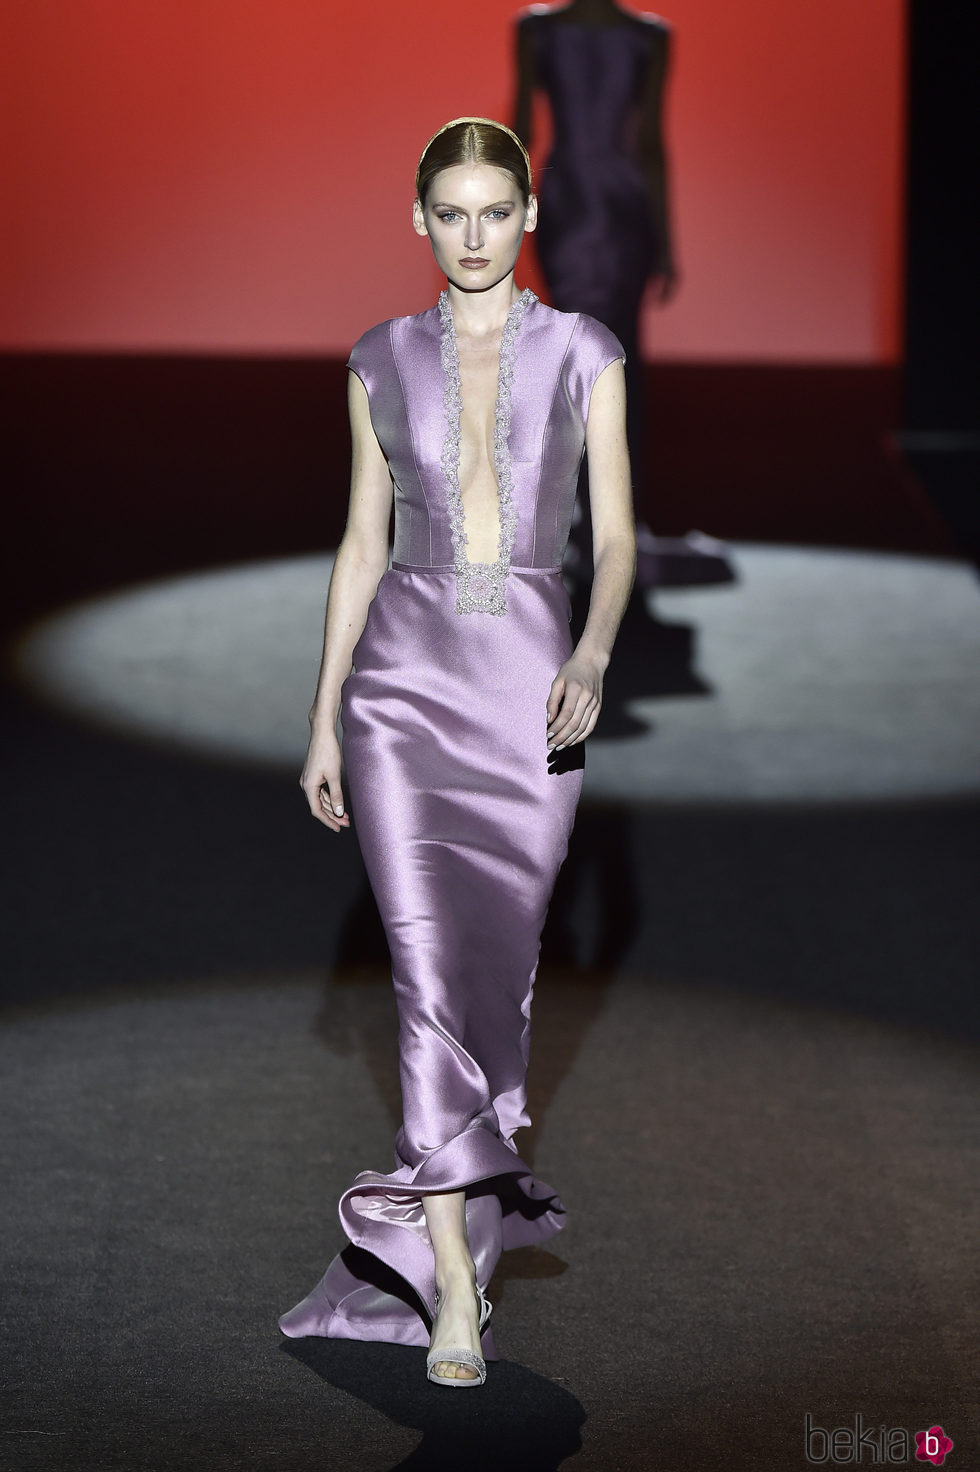 Vestido de raso lila con escote infinito de Hannibal Laguna de la colección otoño/invierno 2017/2018 en Madrid Fashion Week